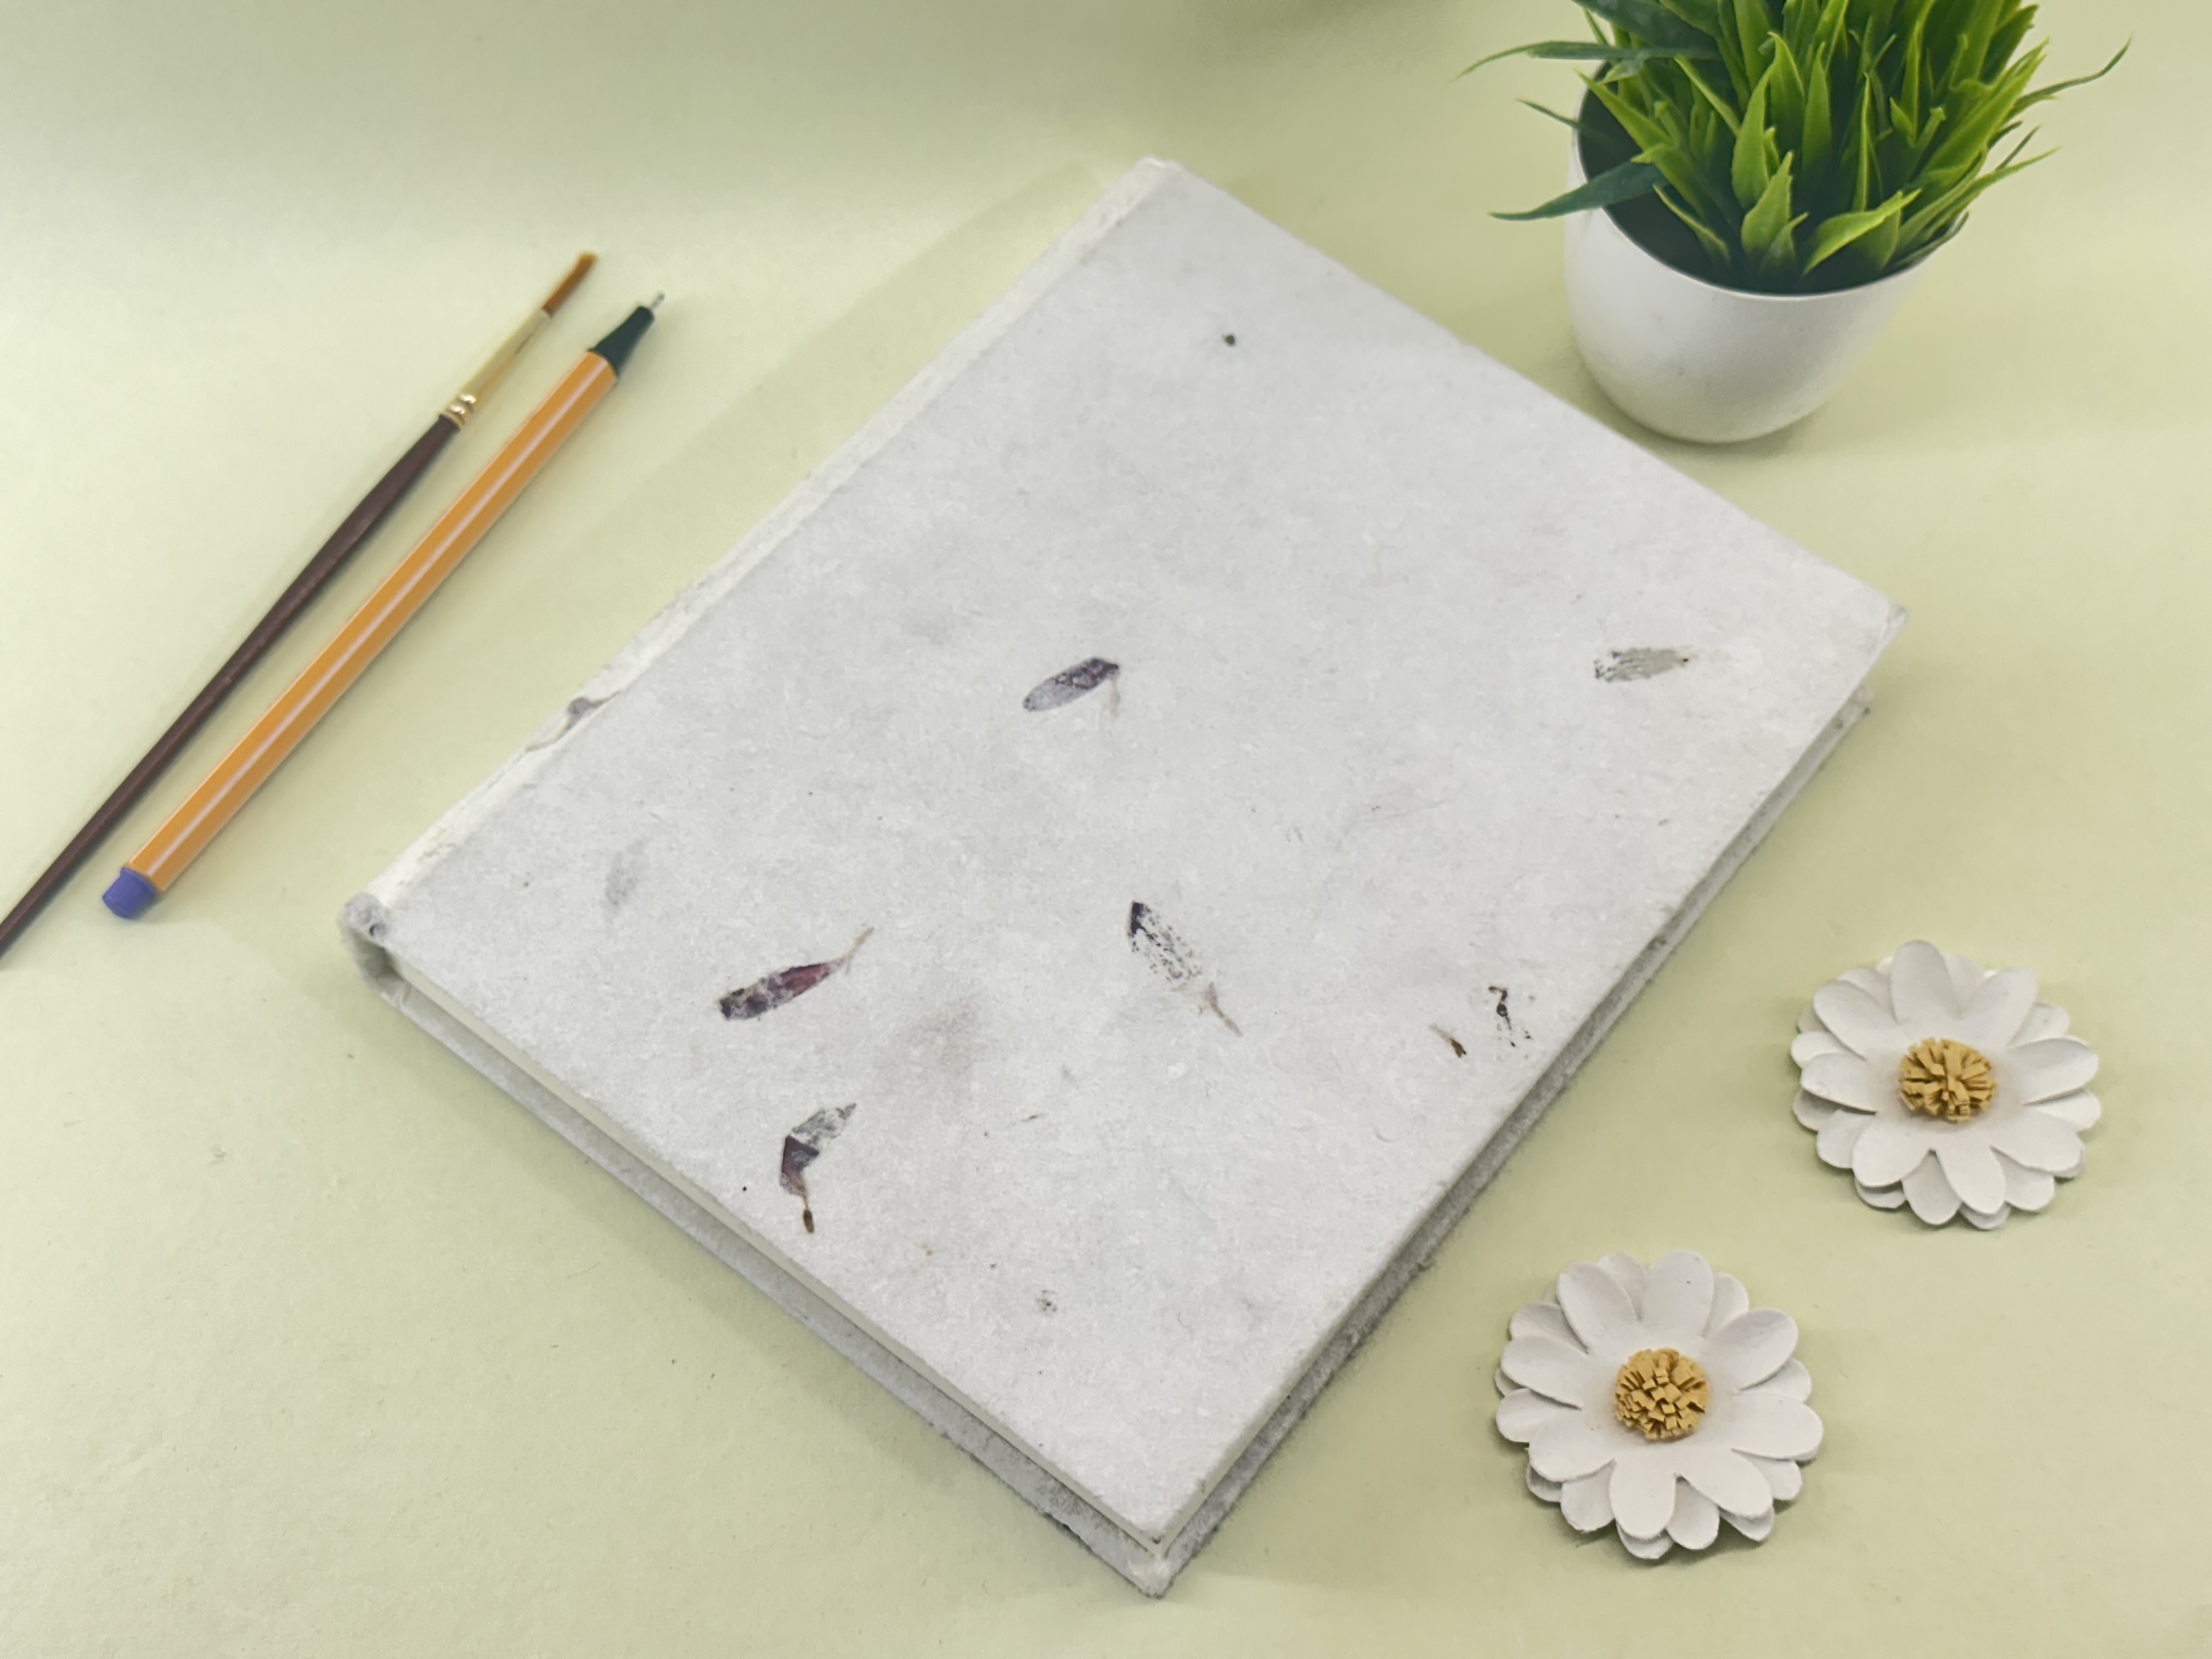 Aster Leaves Handmade paper Journal